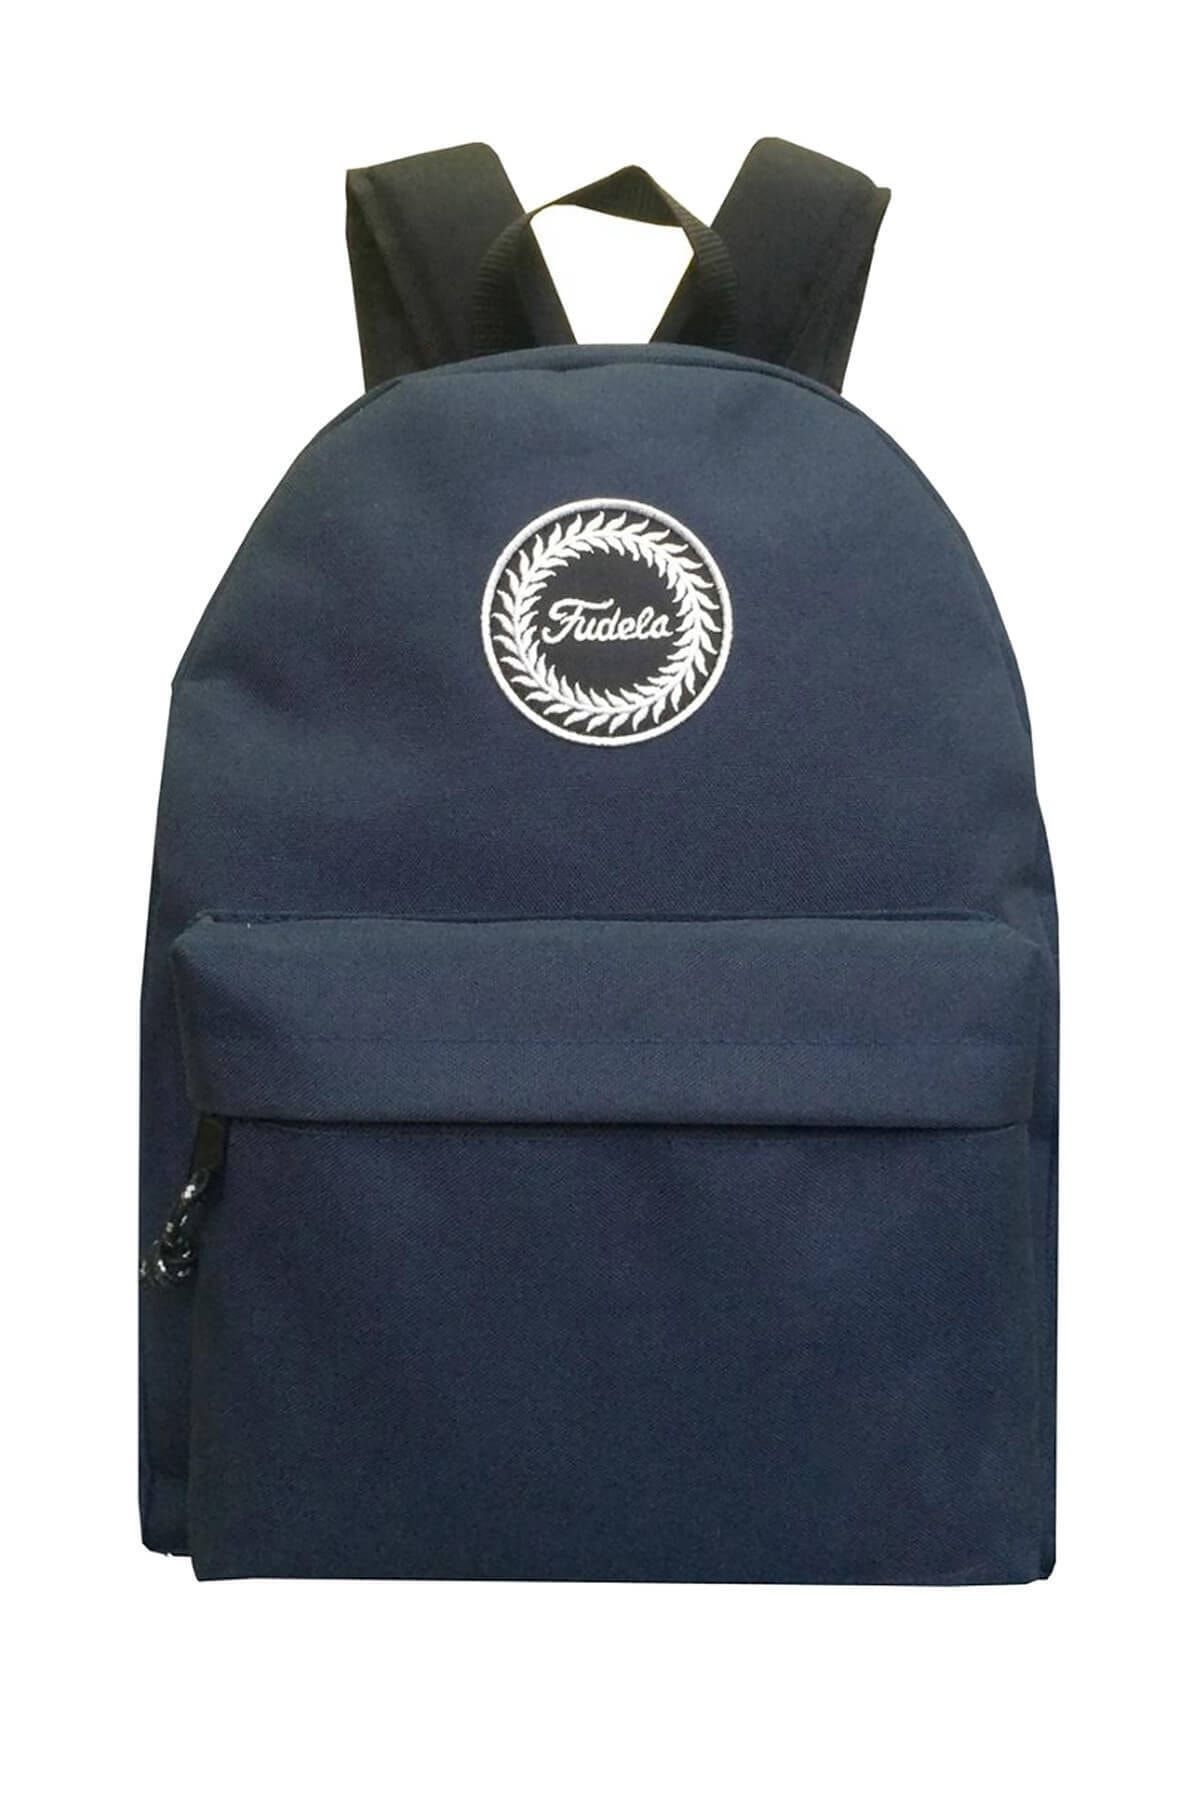 Fudela Zye Navy Blue Backpack Sırt Çantası